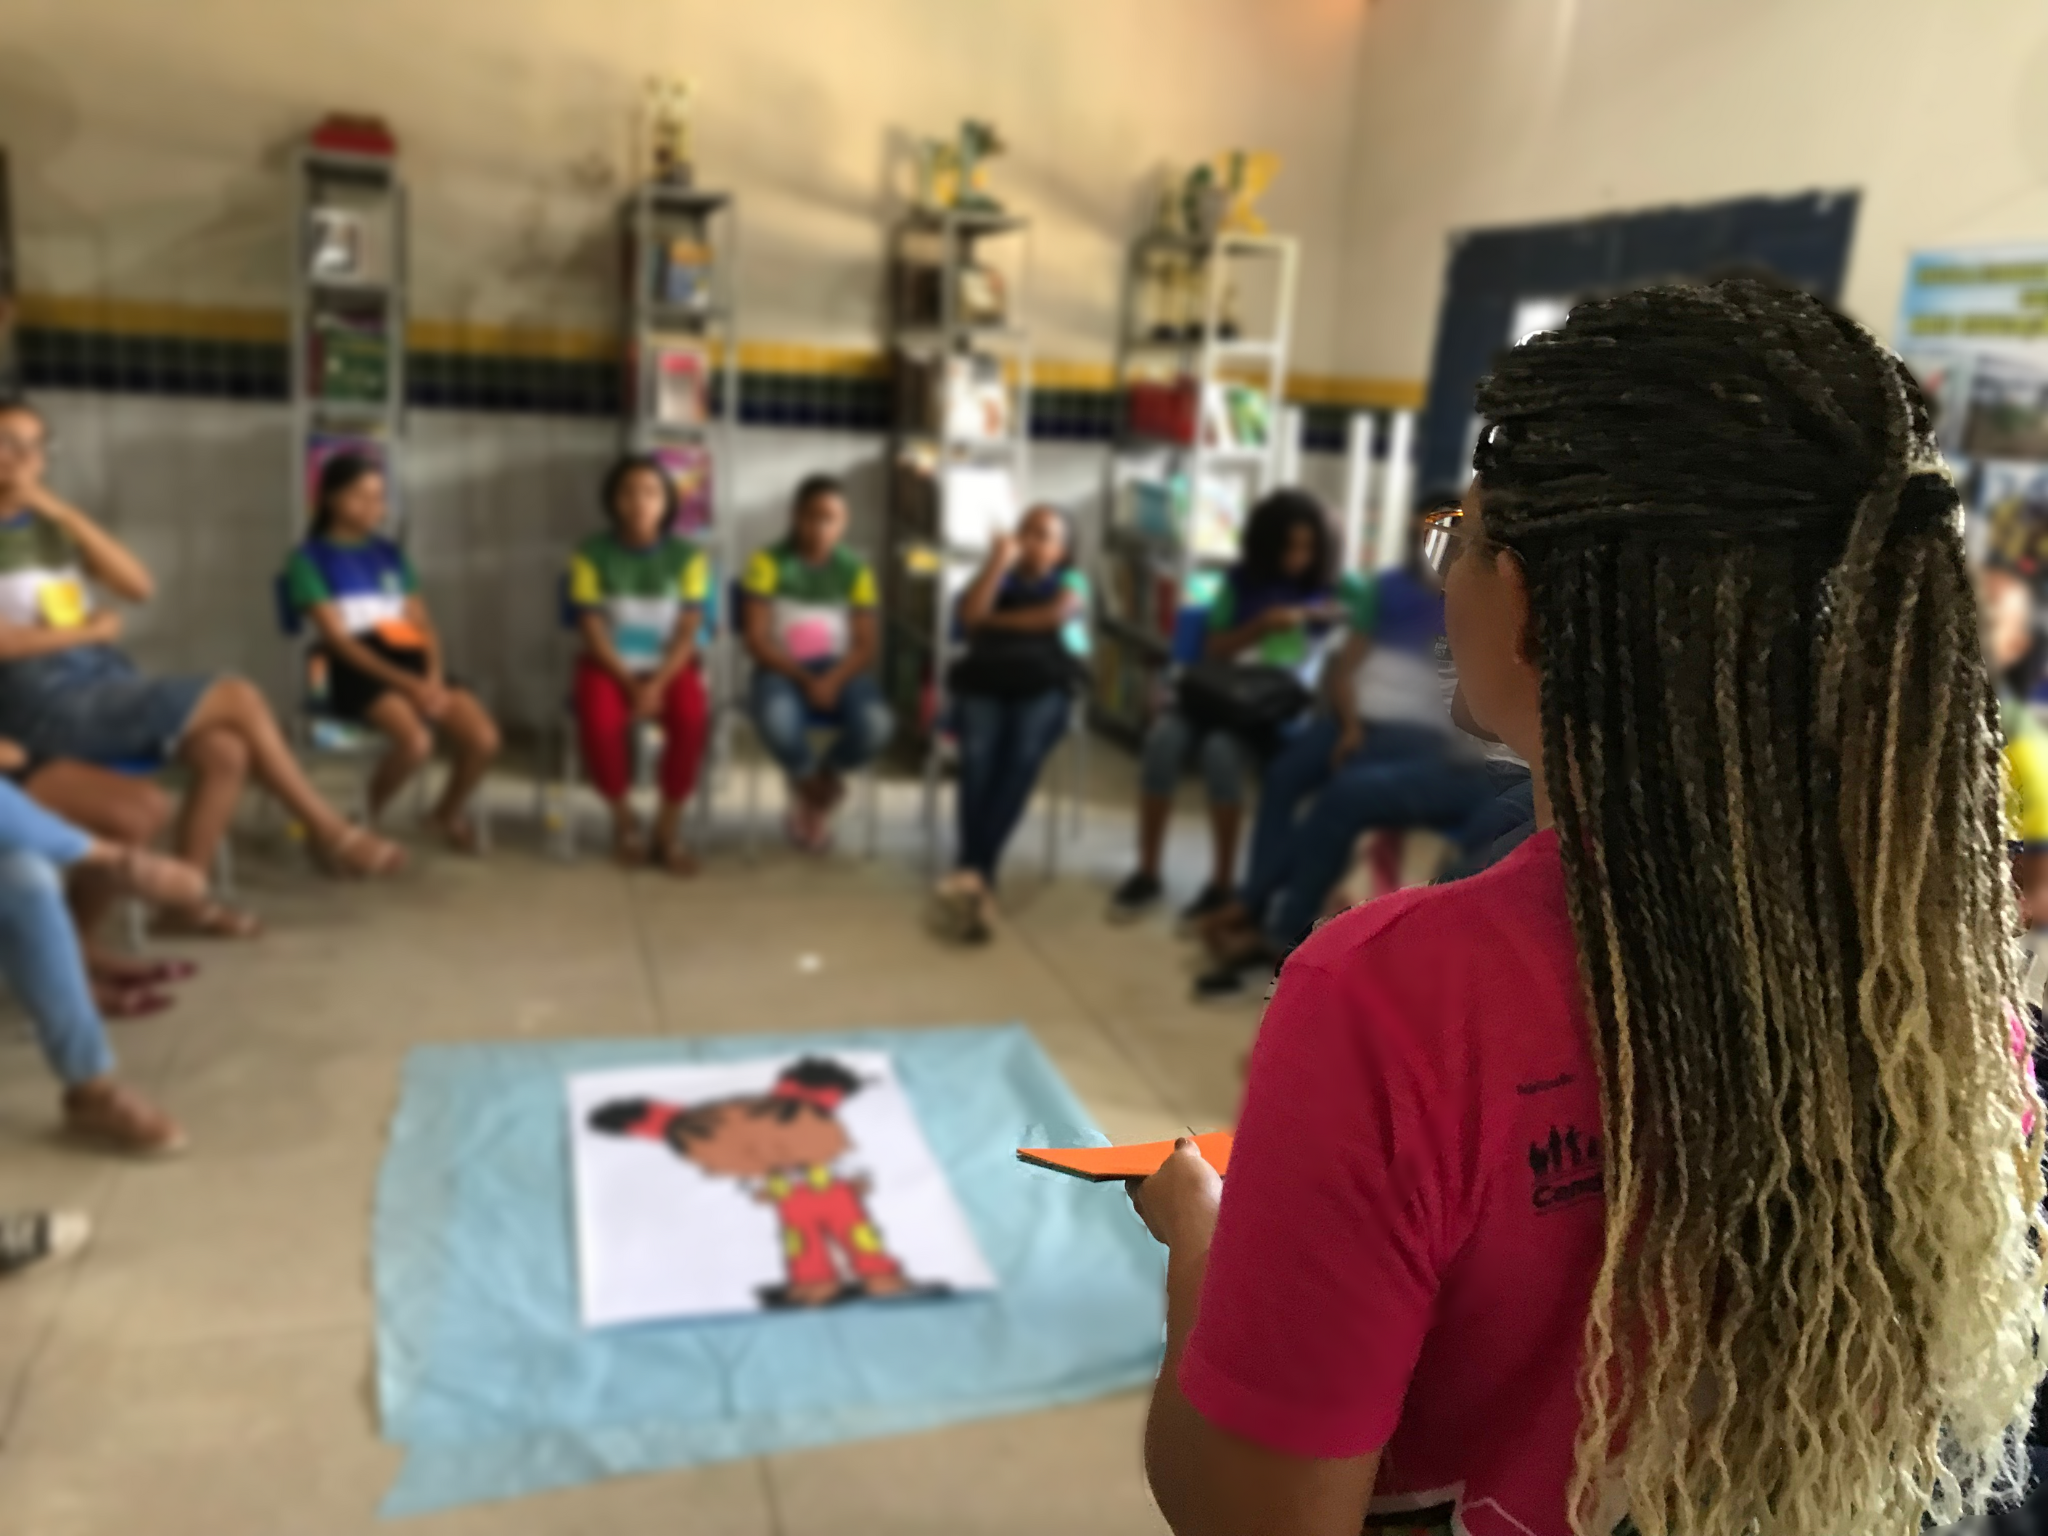 Seminário “Meninas por uma Educação com Igualdade” será realizado no Recife